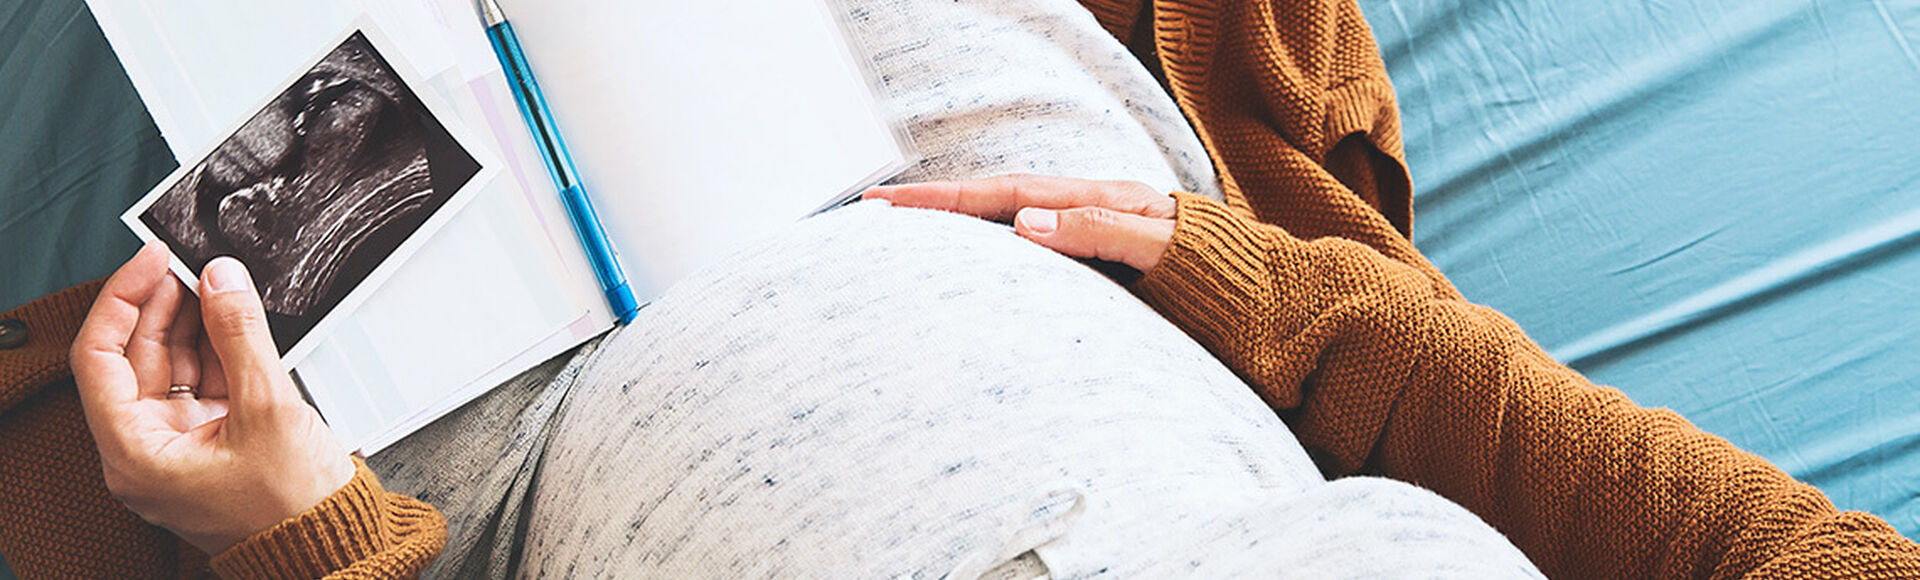 ¿Por qué se presentan malformaciones en el utero? | Más Abrazos by Huggies